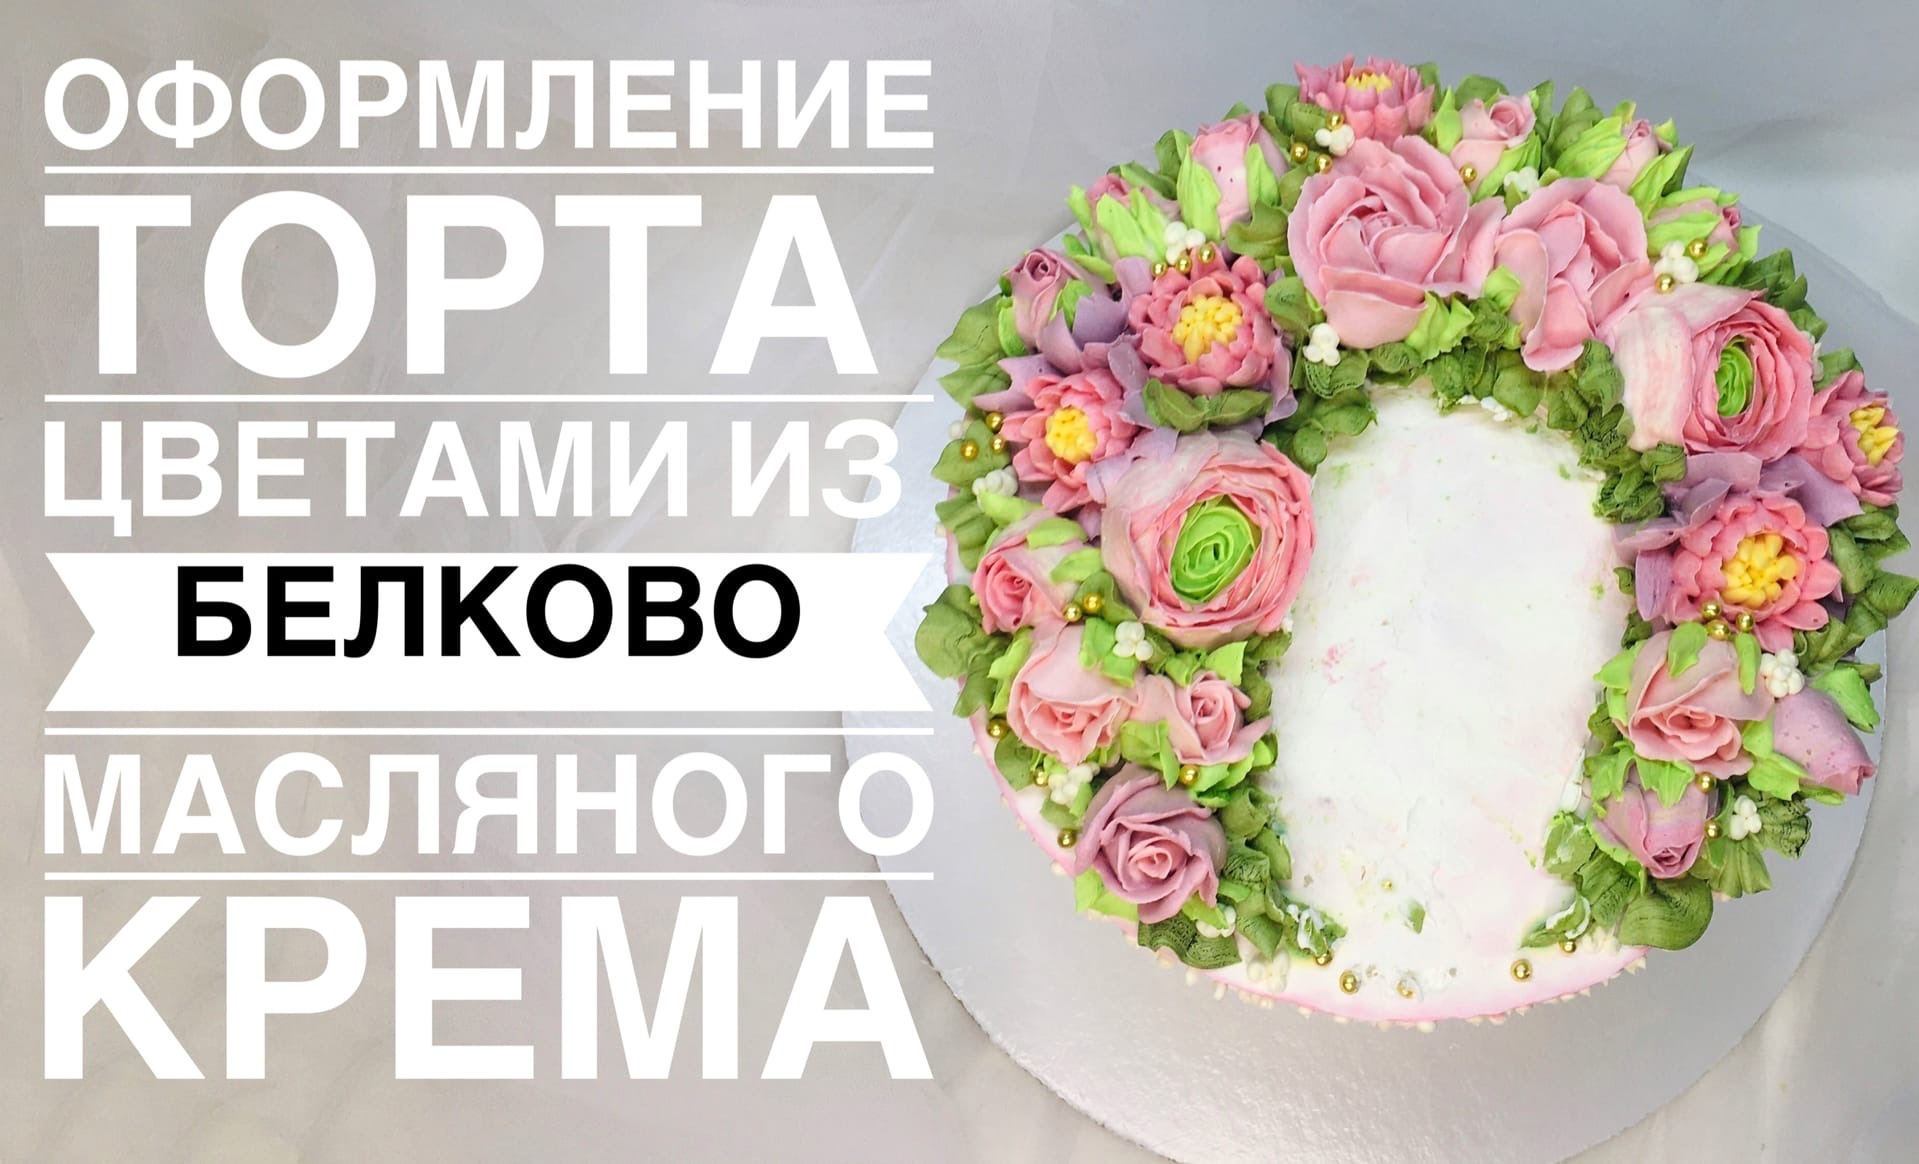 Оформление свадебного торта кремовыми цветами_How to make a wedding cake with uvets from cream.mp4